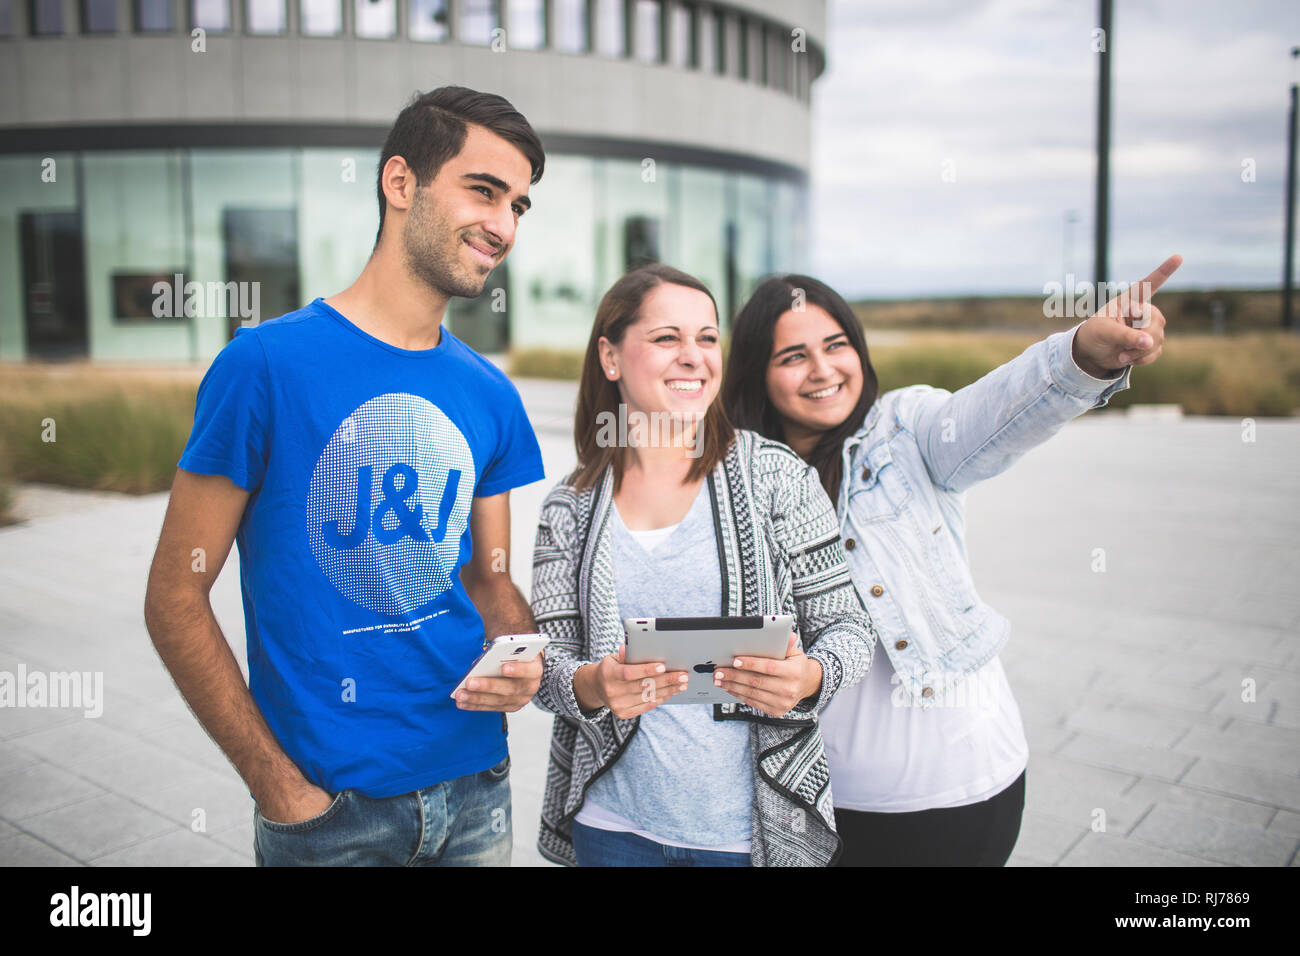 Drei Jugendliche mit Tablet und Smartphone unterwegs Stock Photo